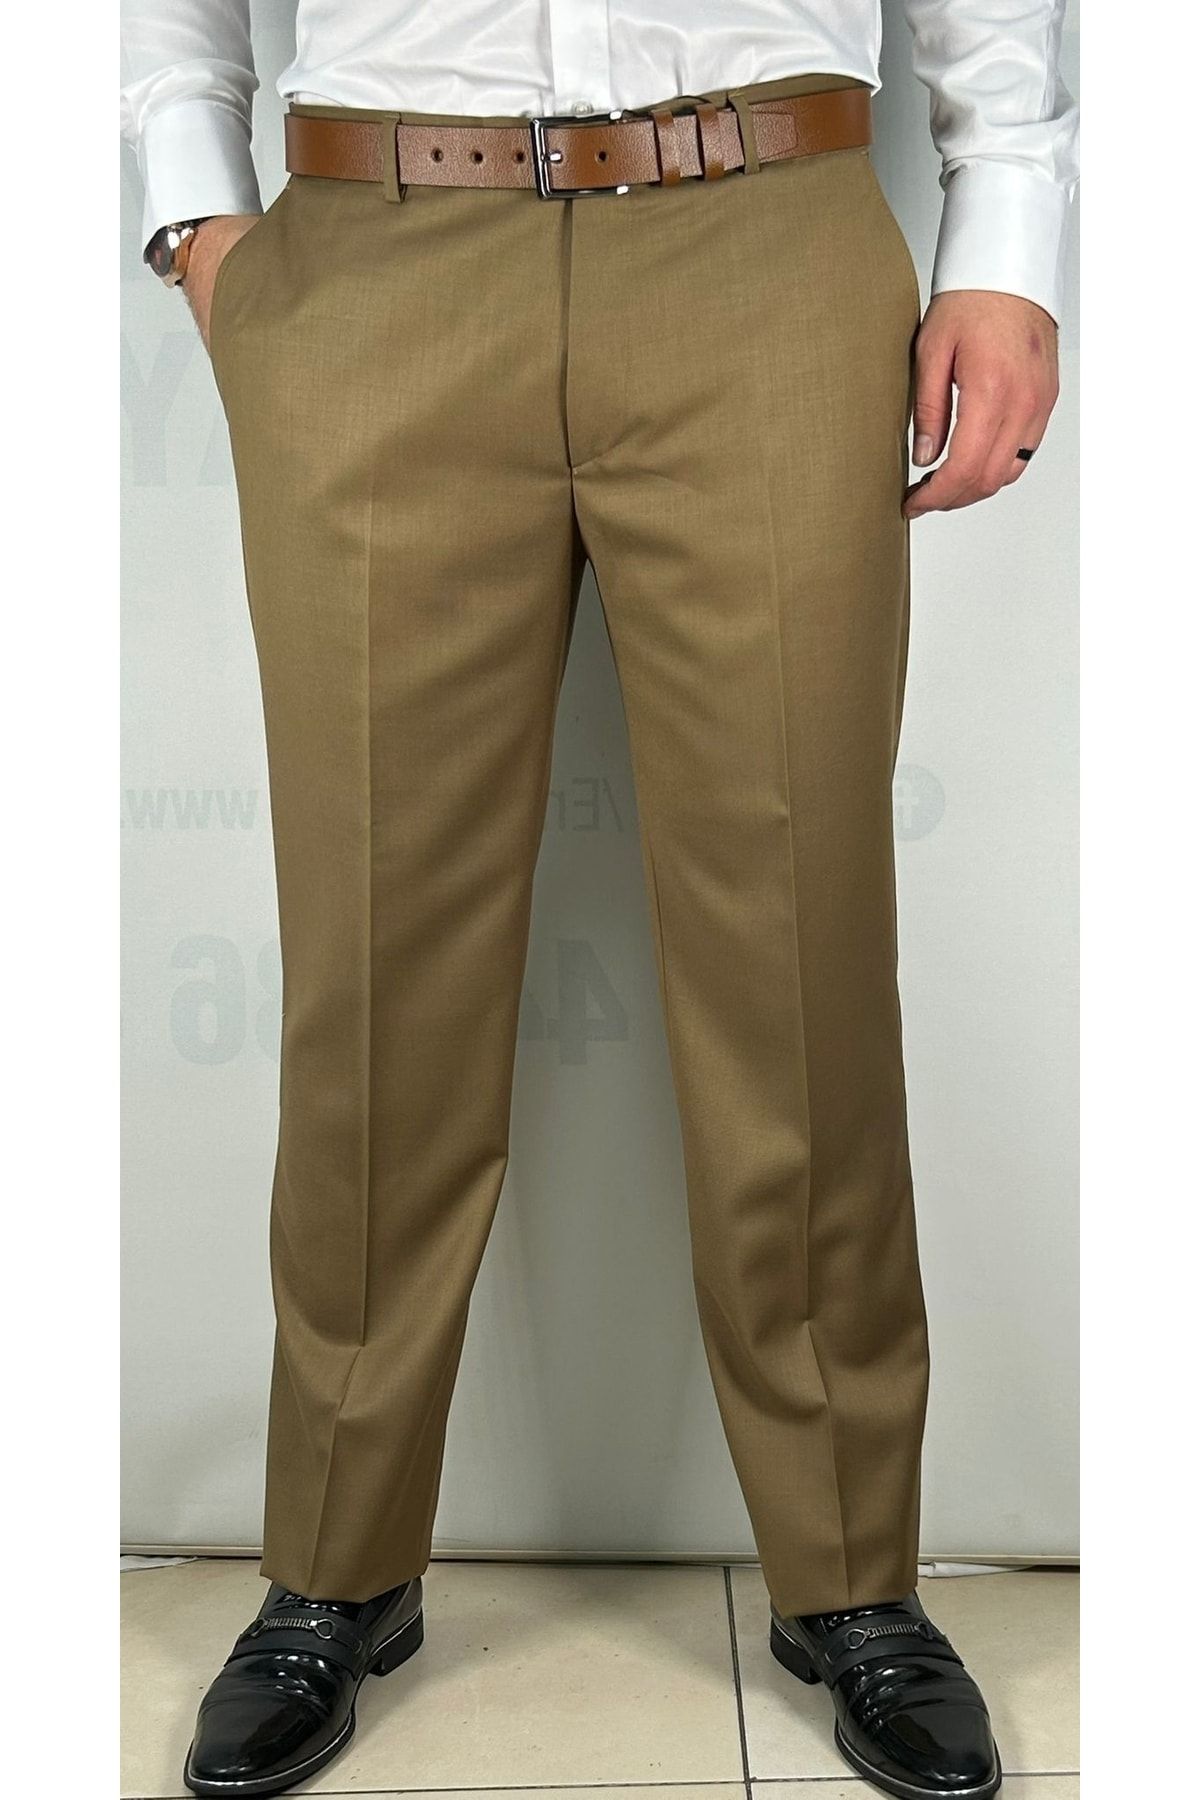 AD & AV Slim Fit Men Maroon Trousers - Buy AD & AV Slim Fit Men Maroon  Trousers Online at Best Prices in India | Flipkart.com